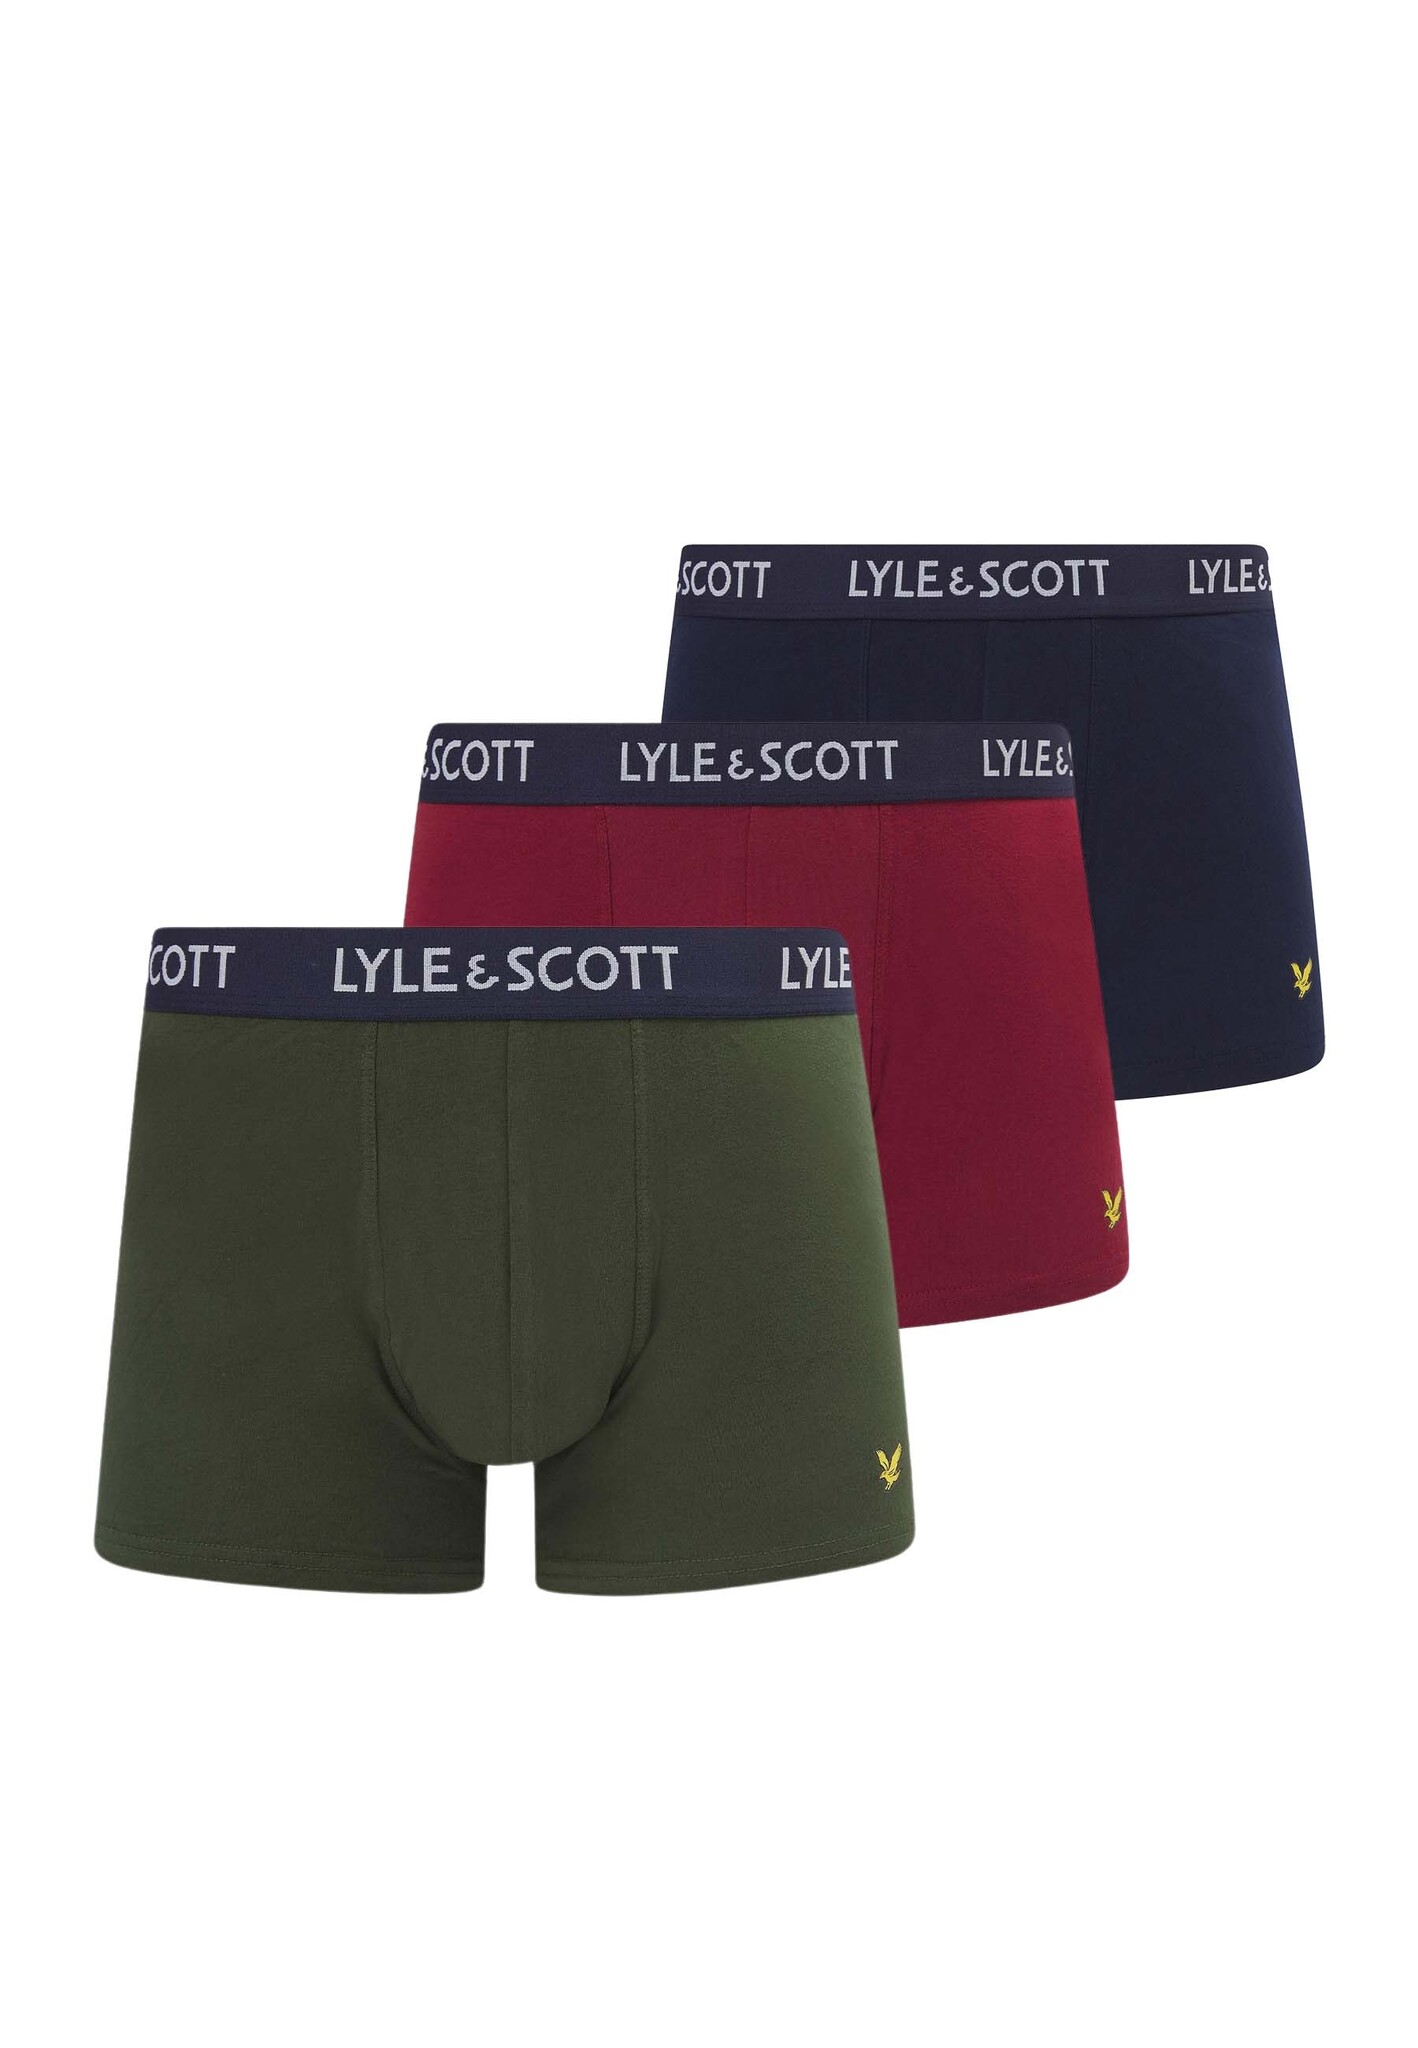 Lyle & Scott boxershorts multicolor Heren maat M